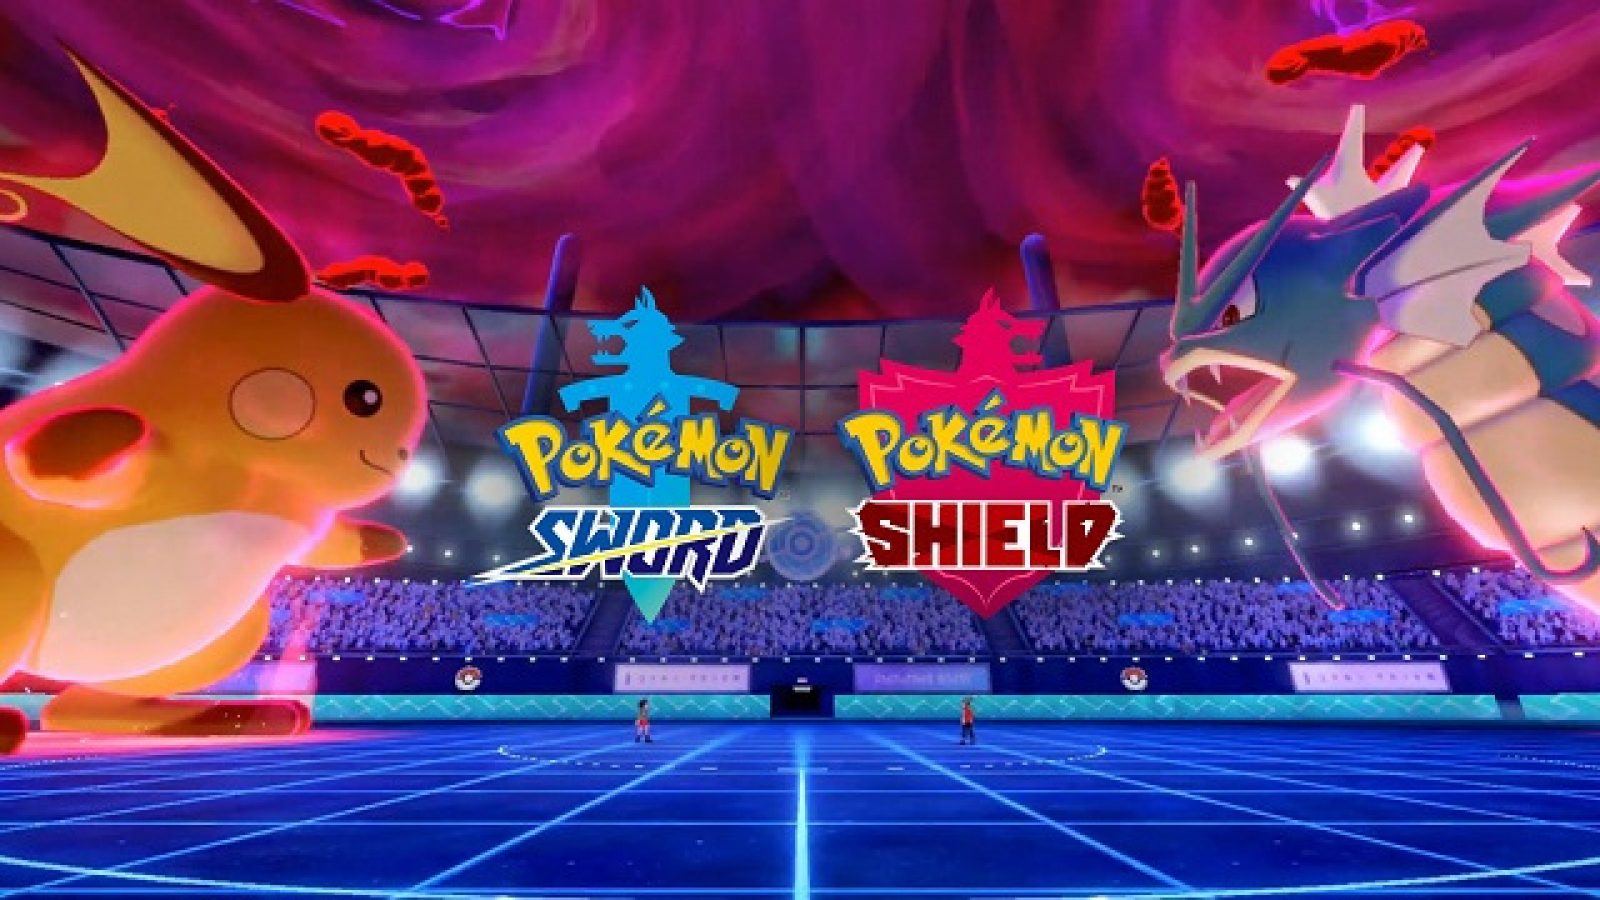 Pokémon GO receberá novos Pokémon e climas dinâmicos nesta semana